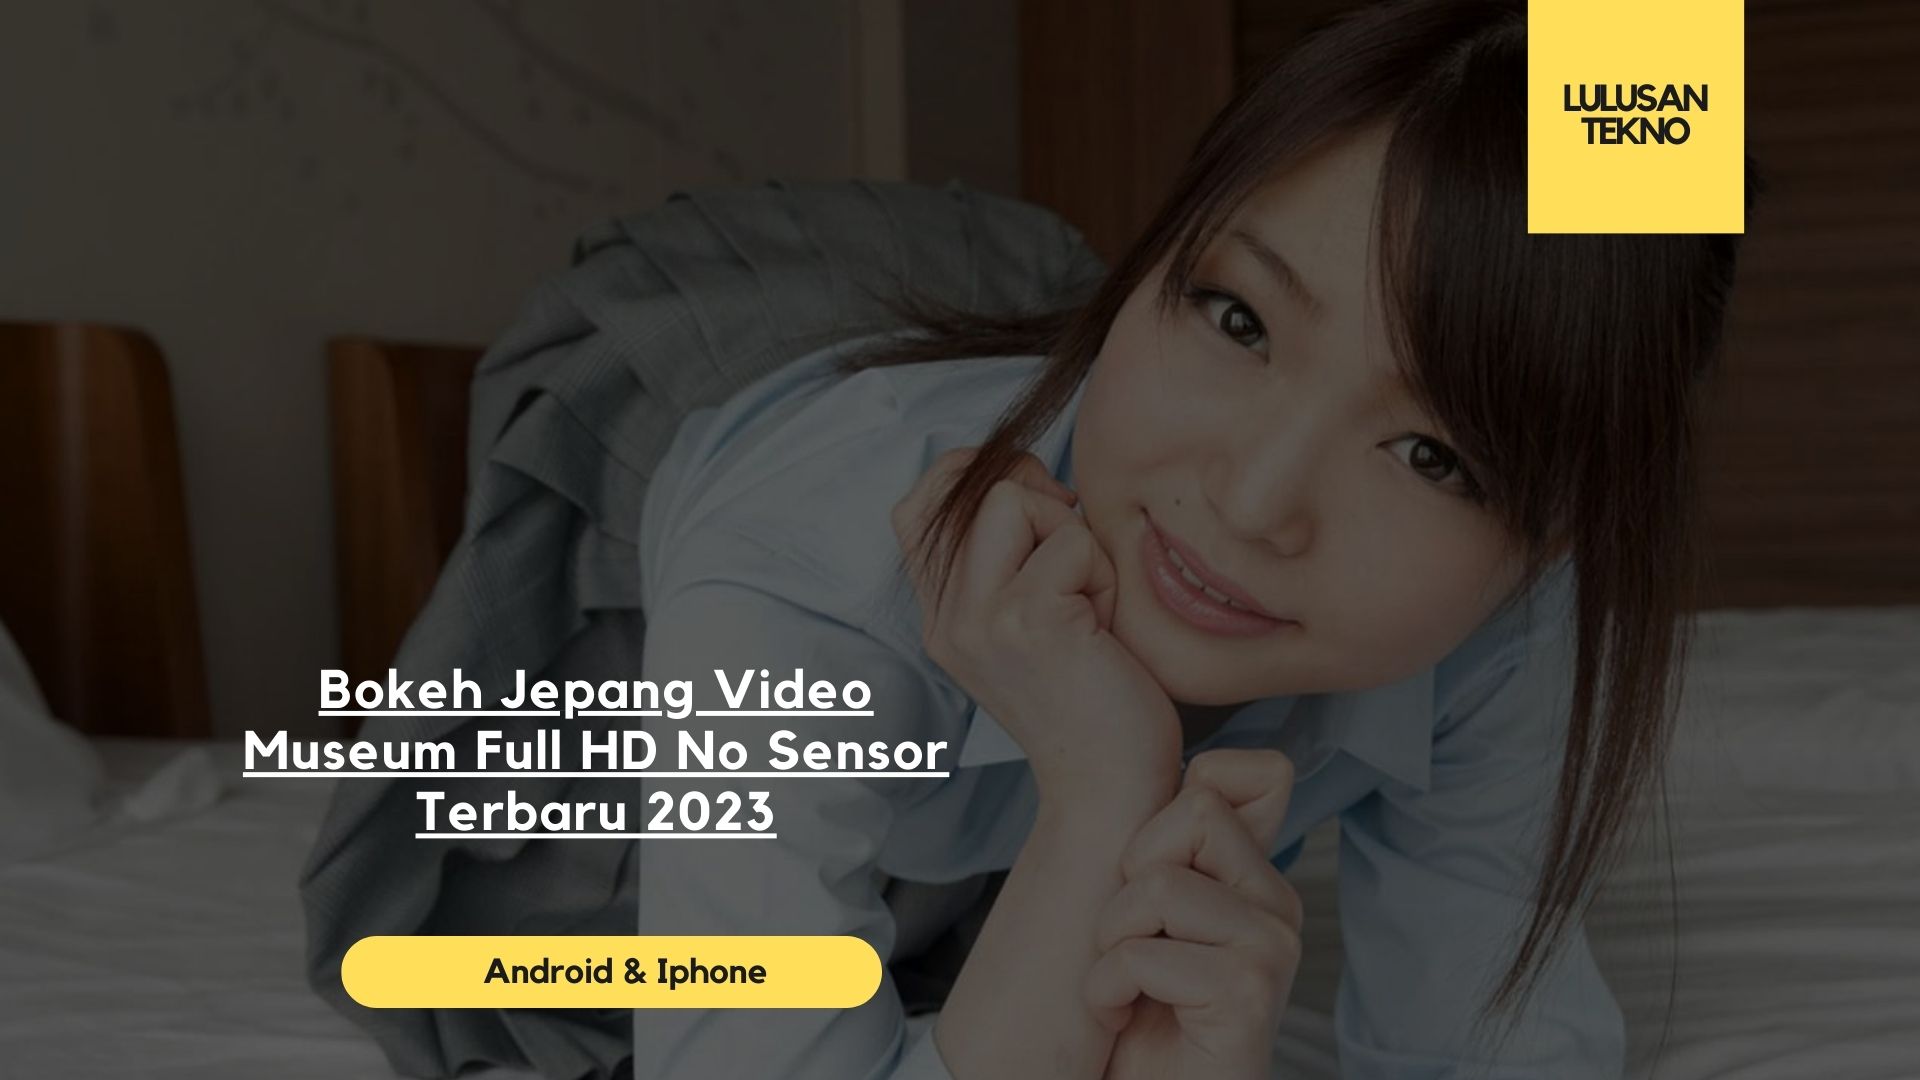 Bokeh Jepang Video Museum Full HD No Sensor Terbaru 2023